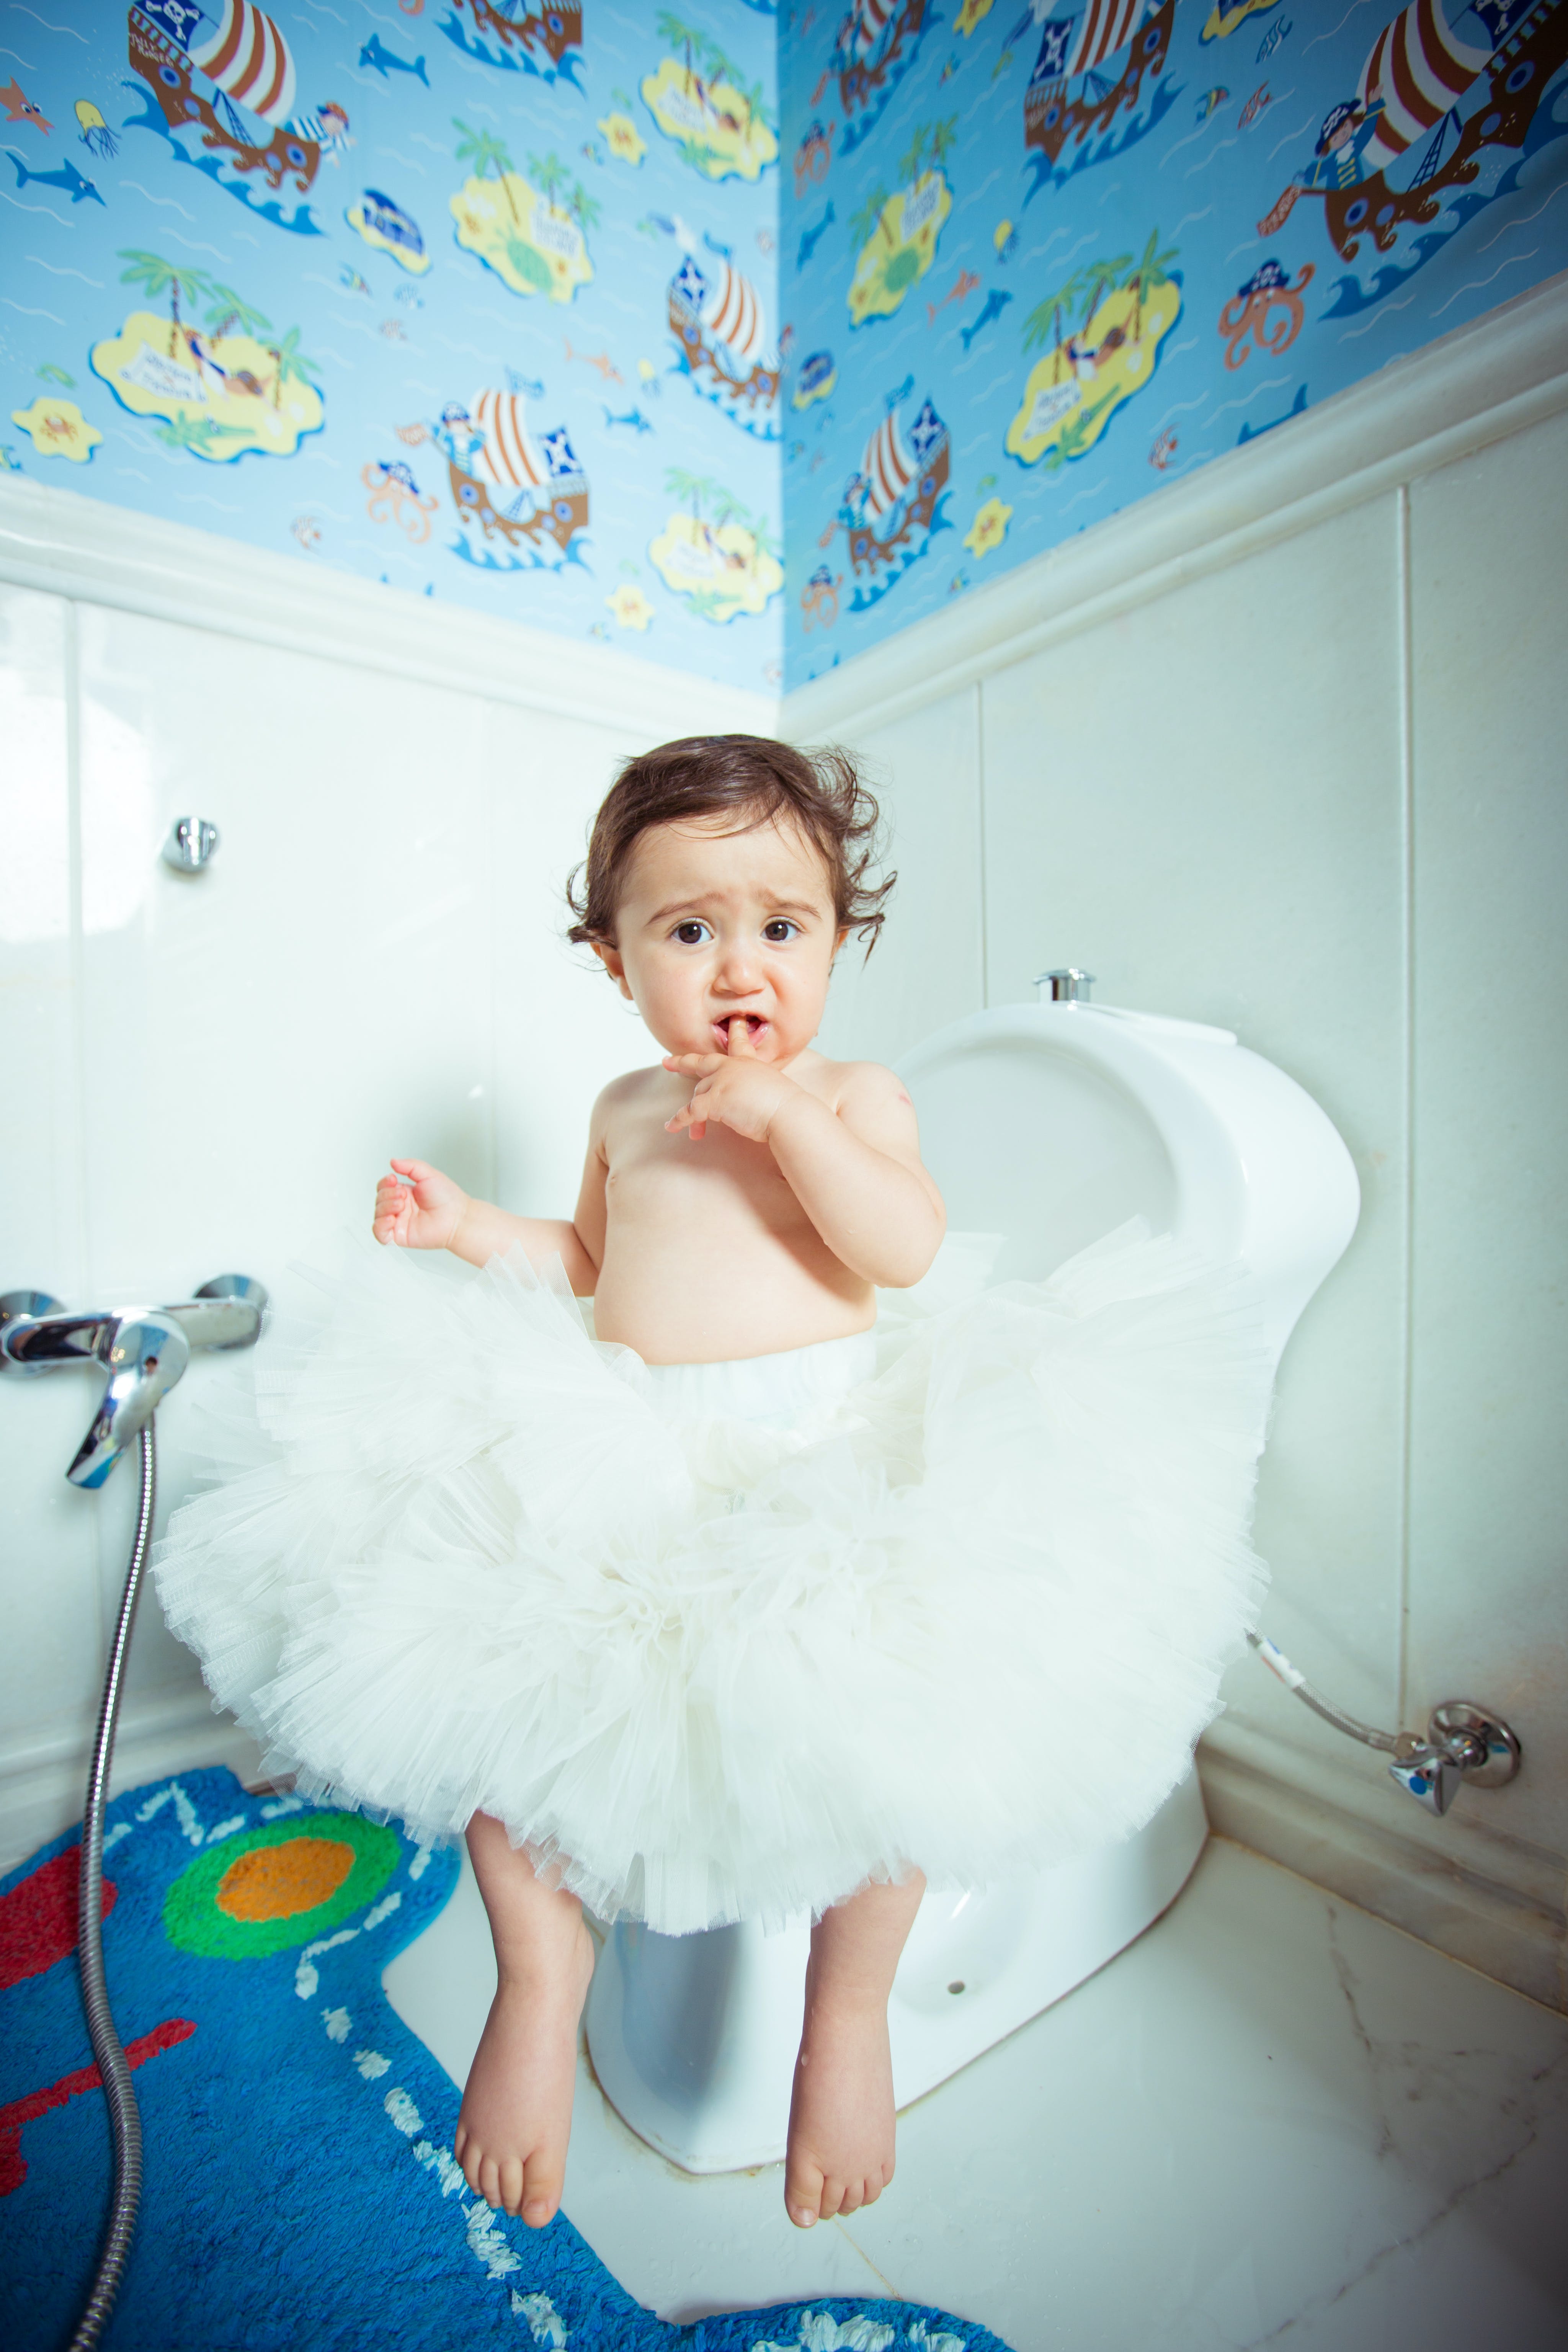 Un enfant assis sur des toilettes | Source : Pexels